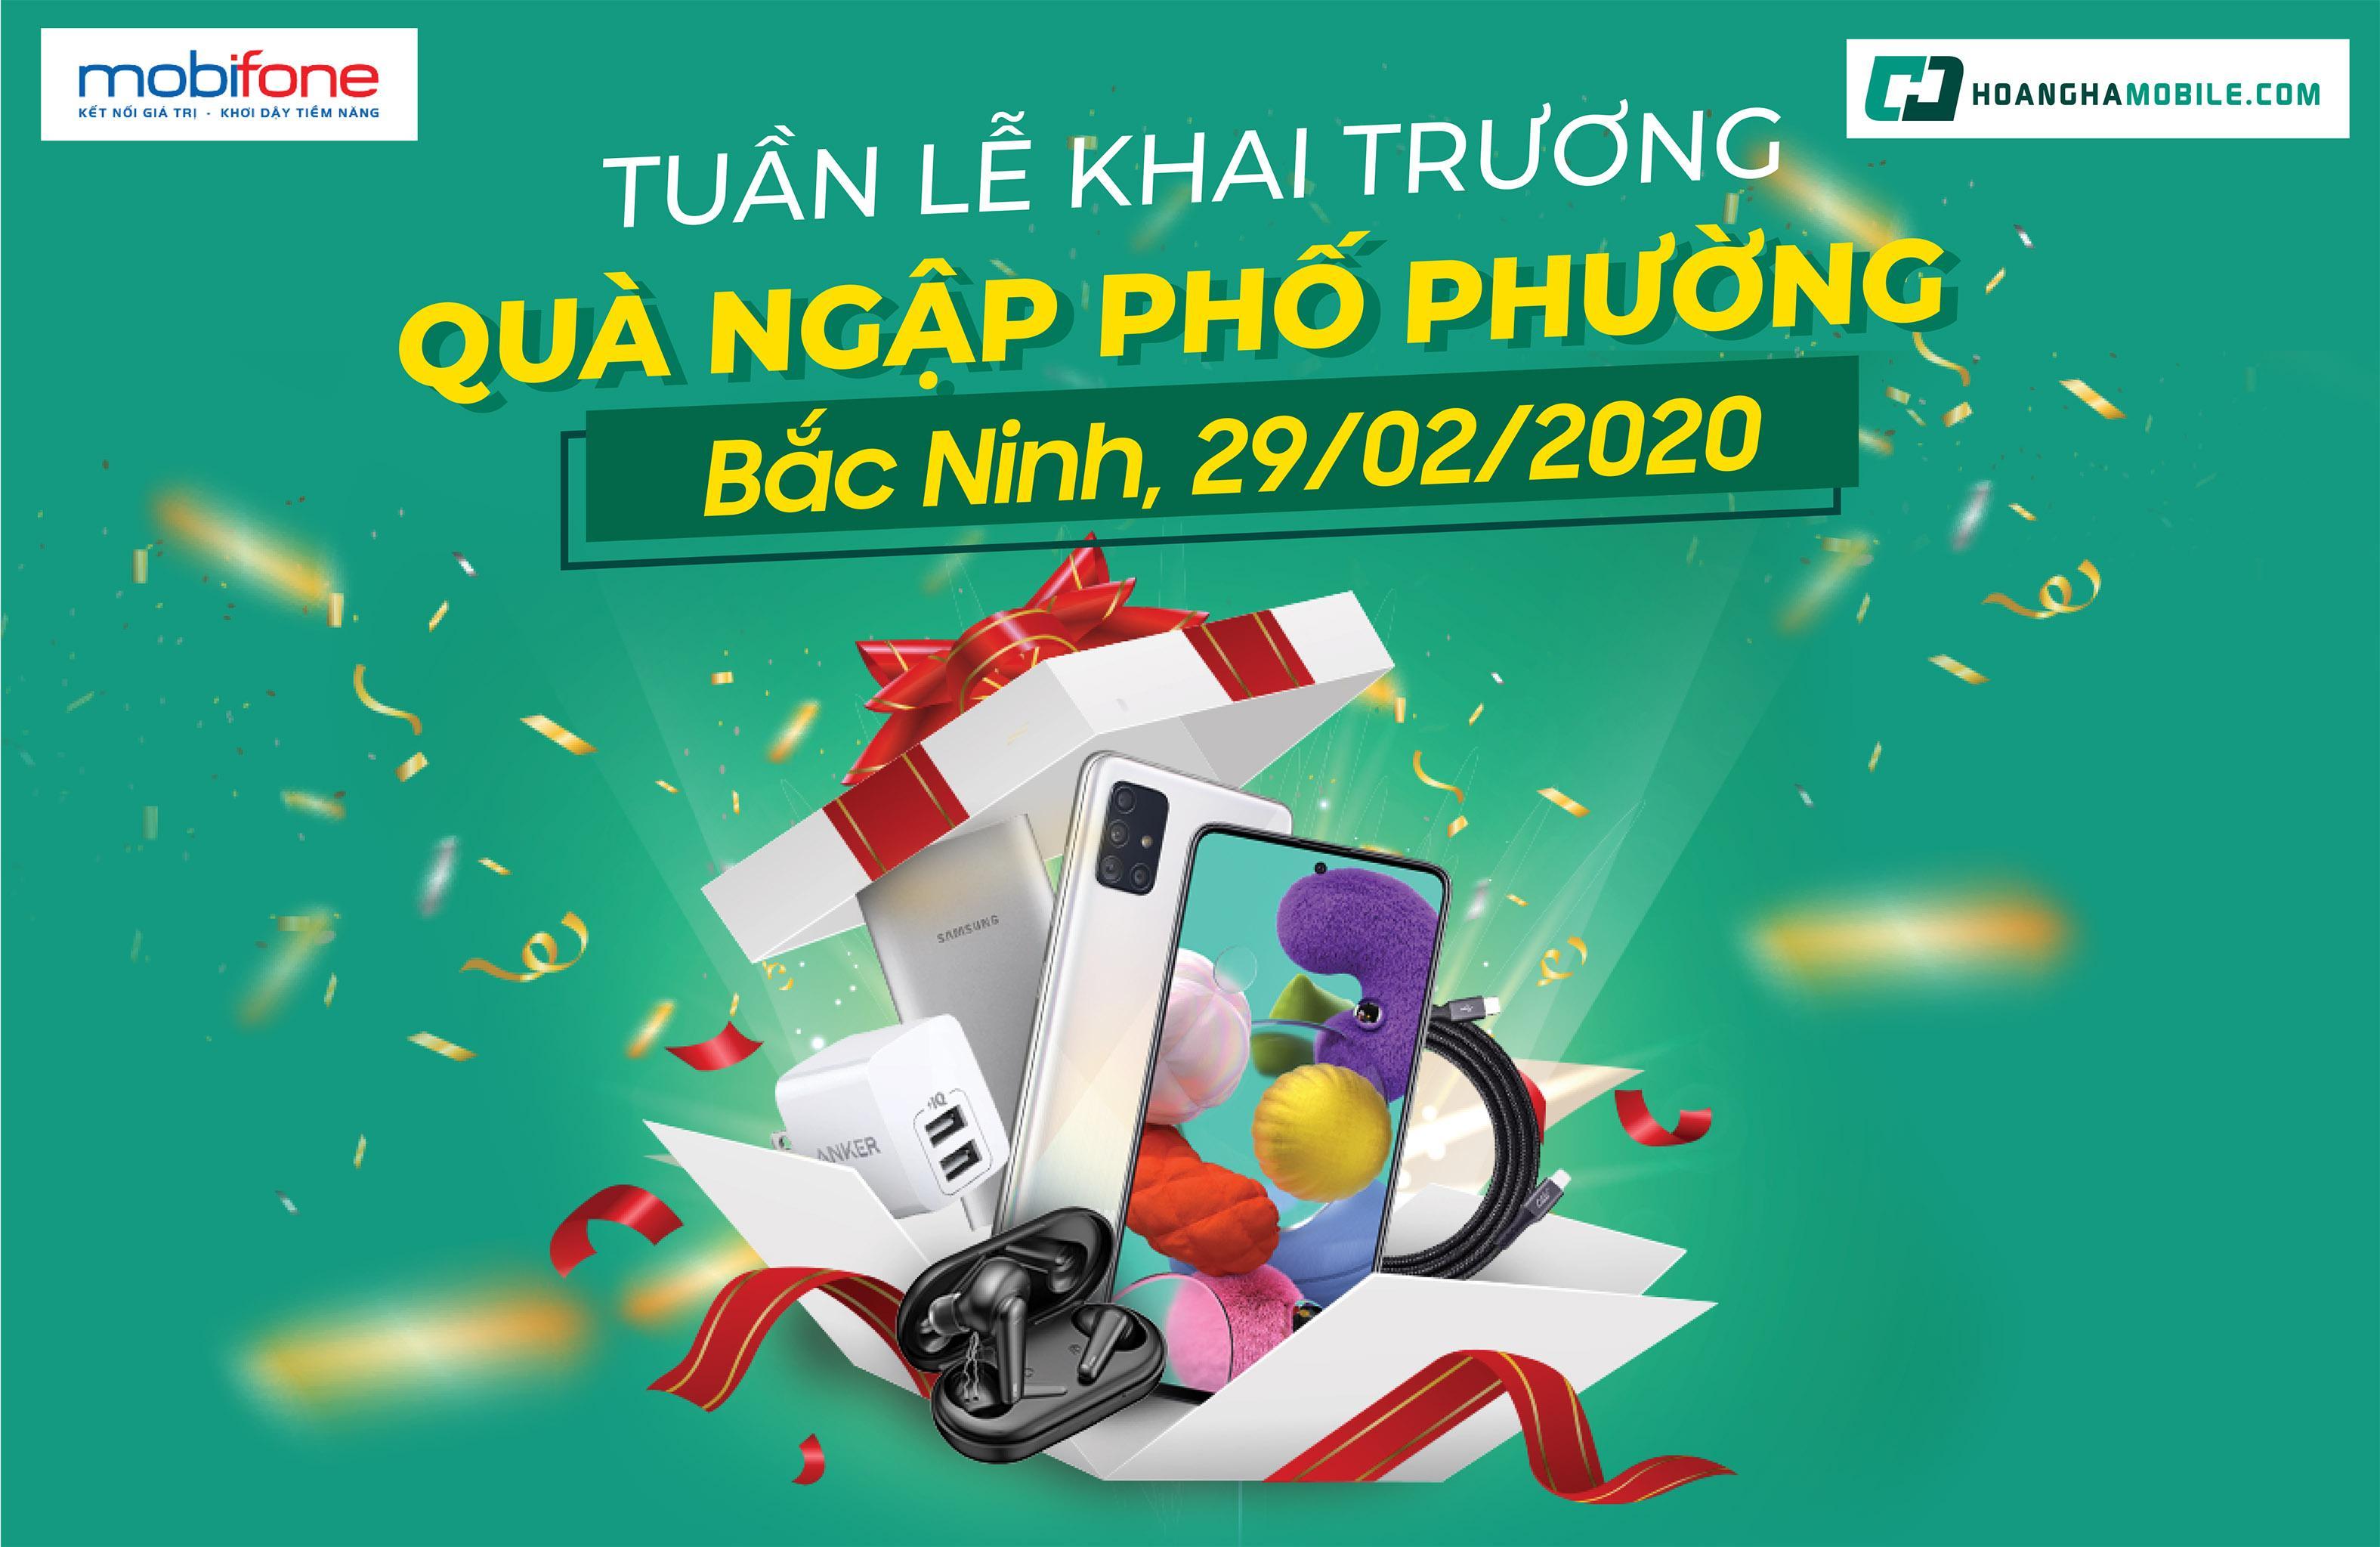 Le khai truong Hoang Ha Mobile tai Bac Ninh